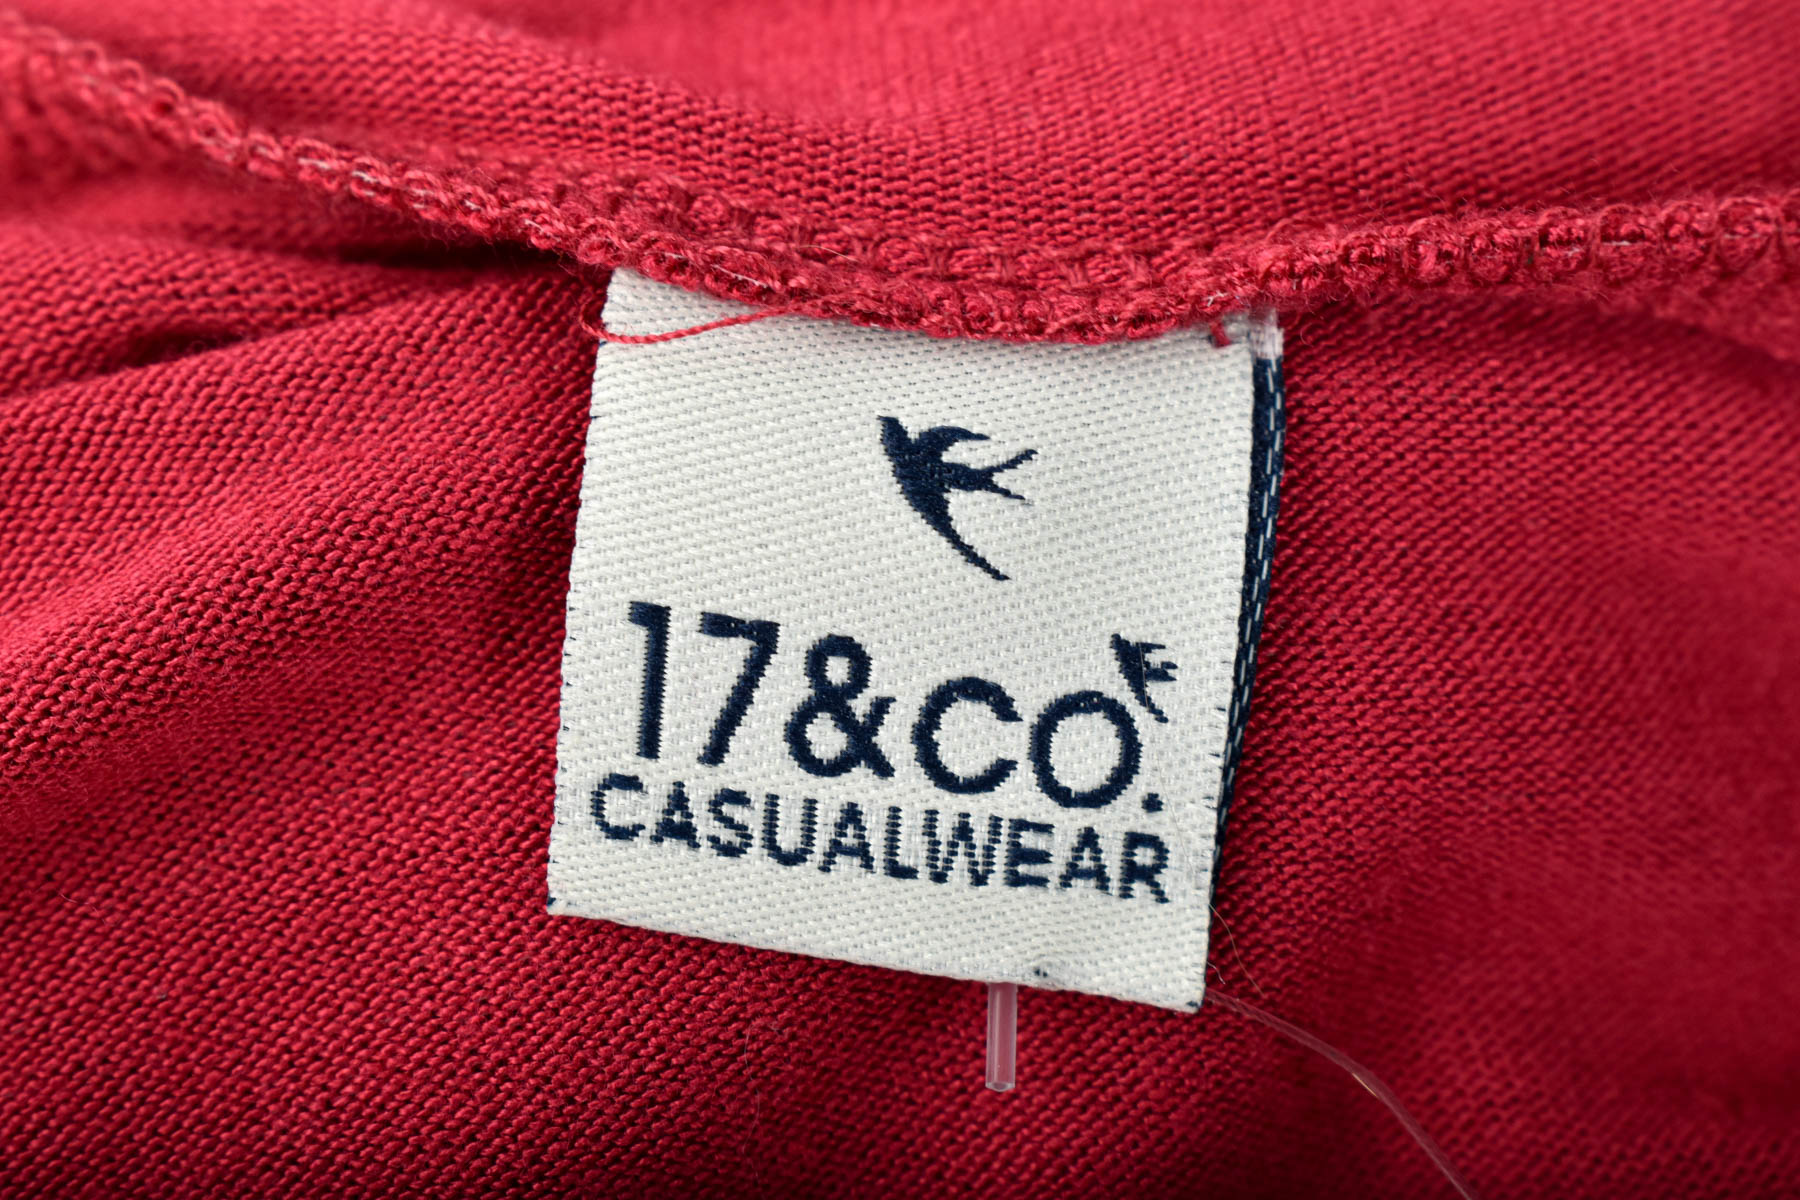 Women's cardigan - 17&CO. CASUALWEAR - 2